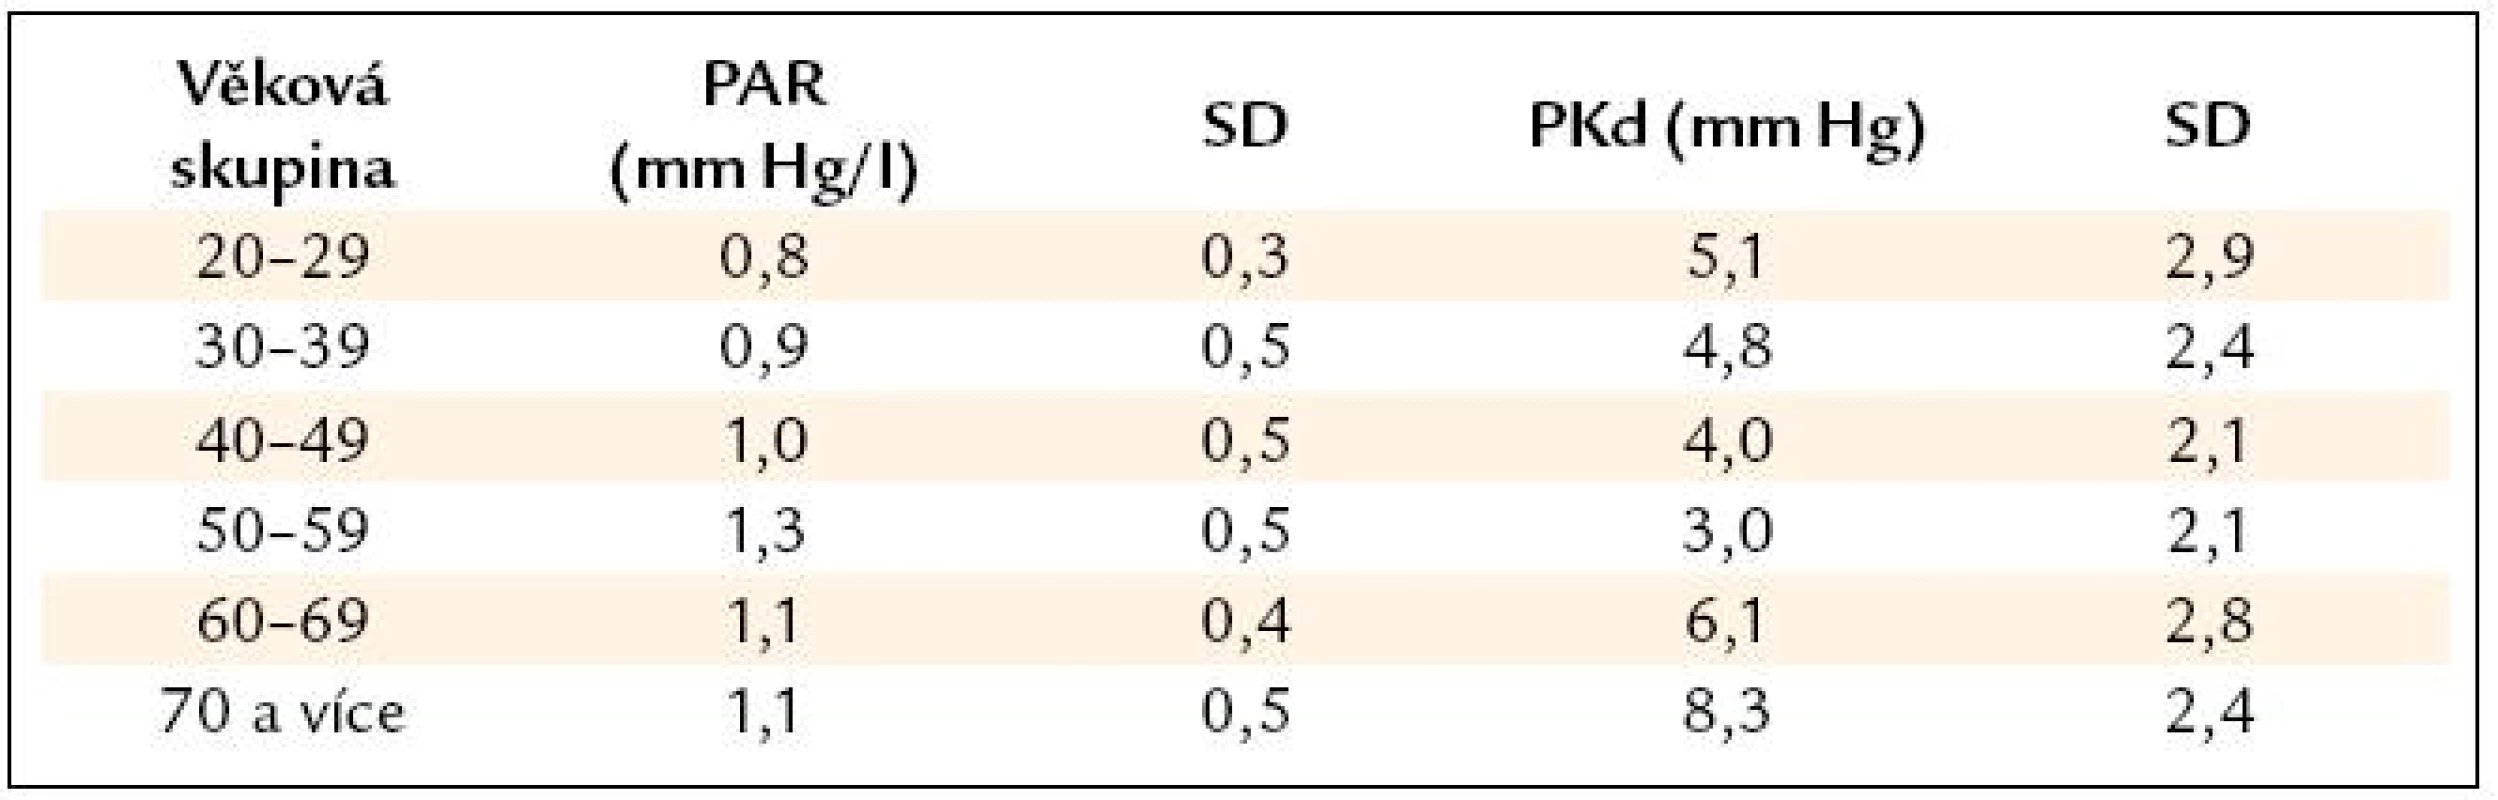 Průměrné hodnoty plicní arteriolární rezistence (PAR) a konečného diastolického tlaku v pravé komoře (PKd) u zdravých osob.